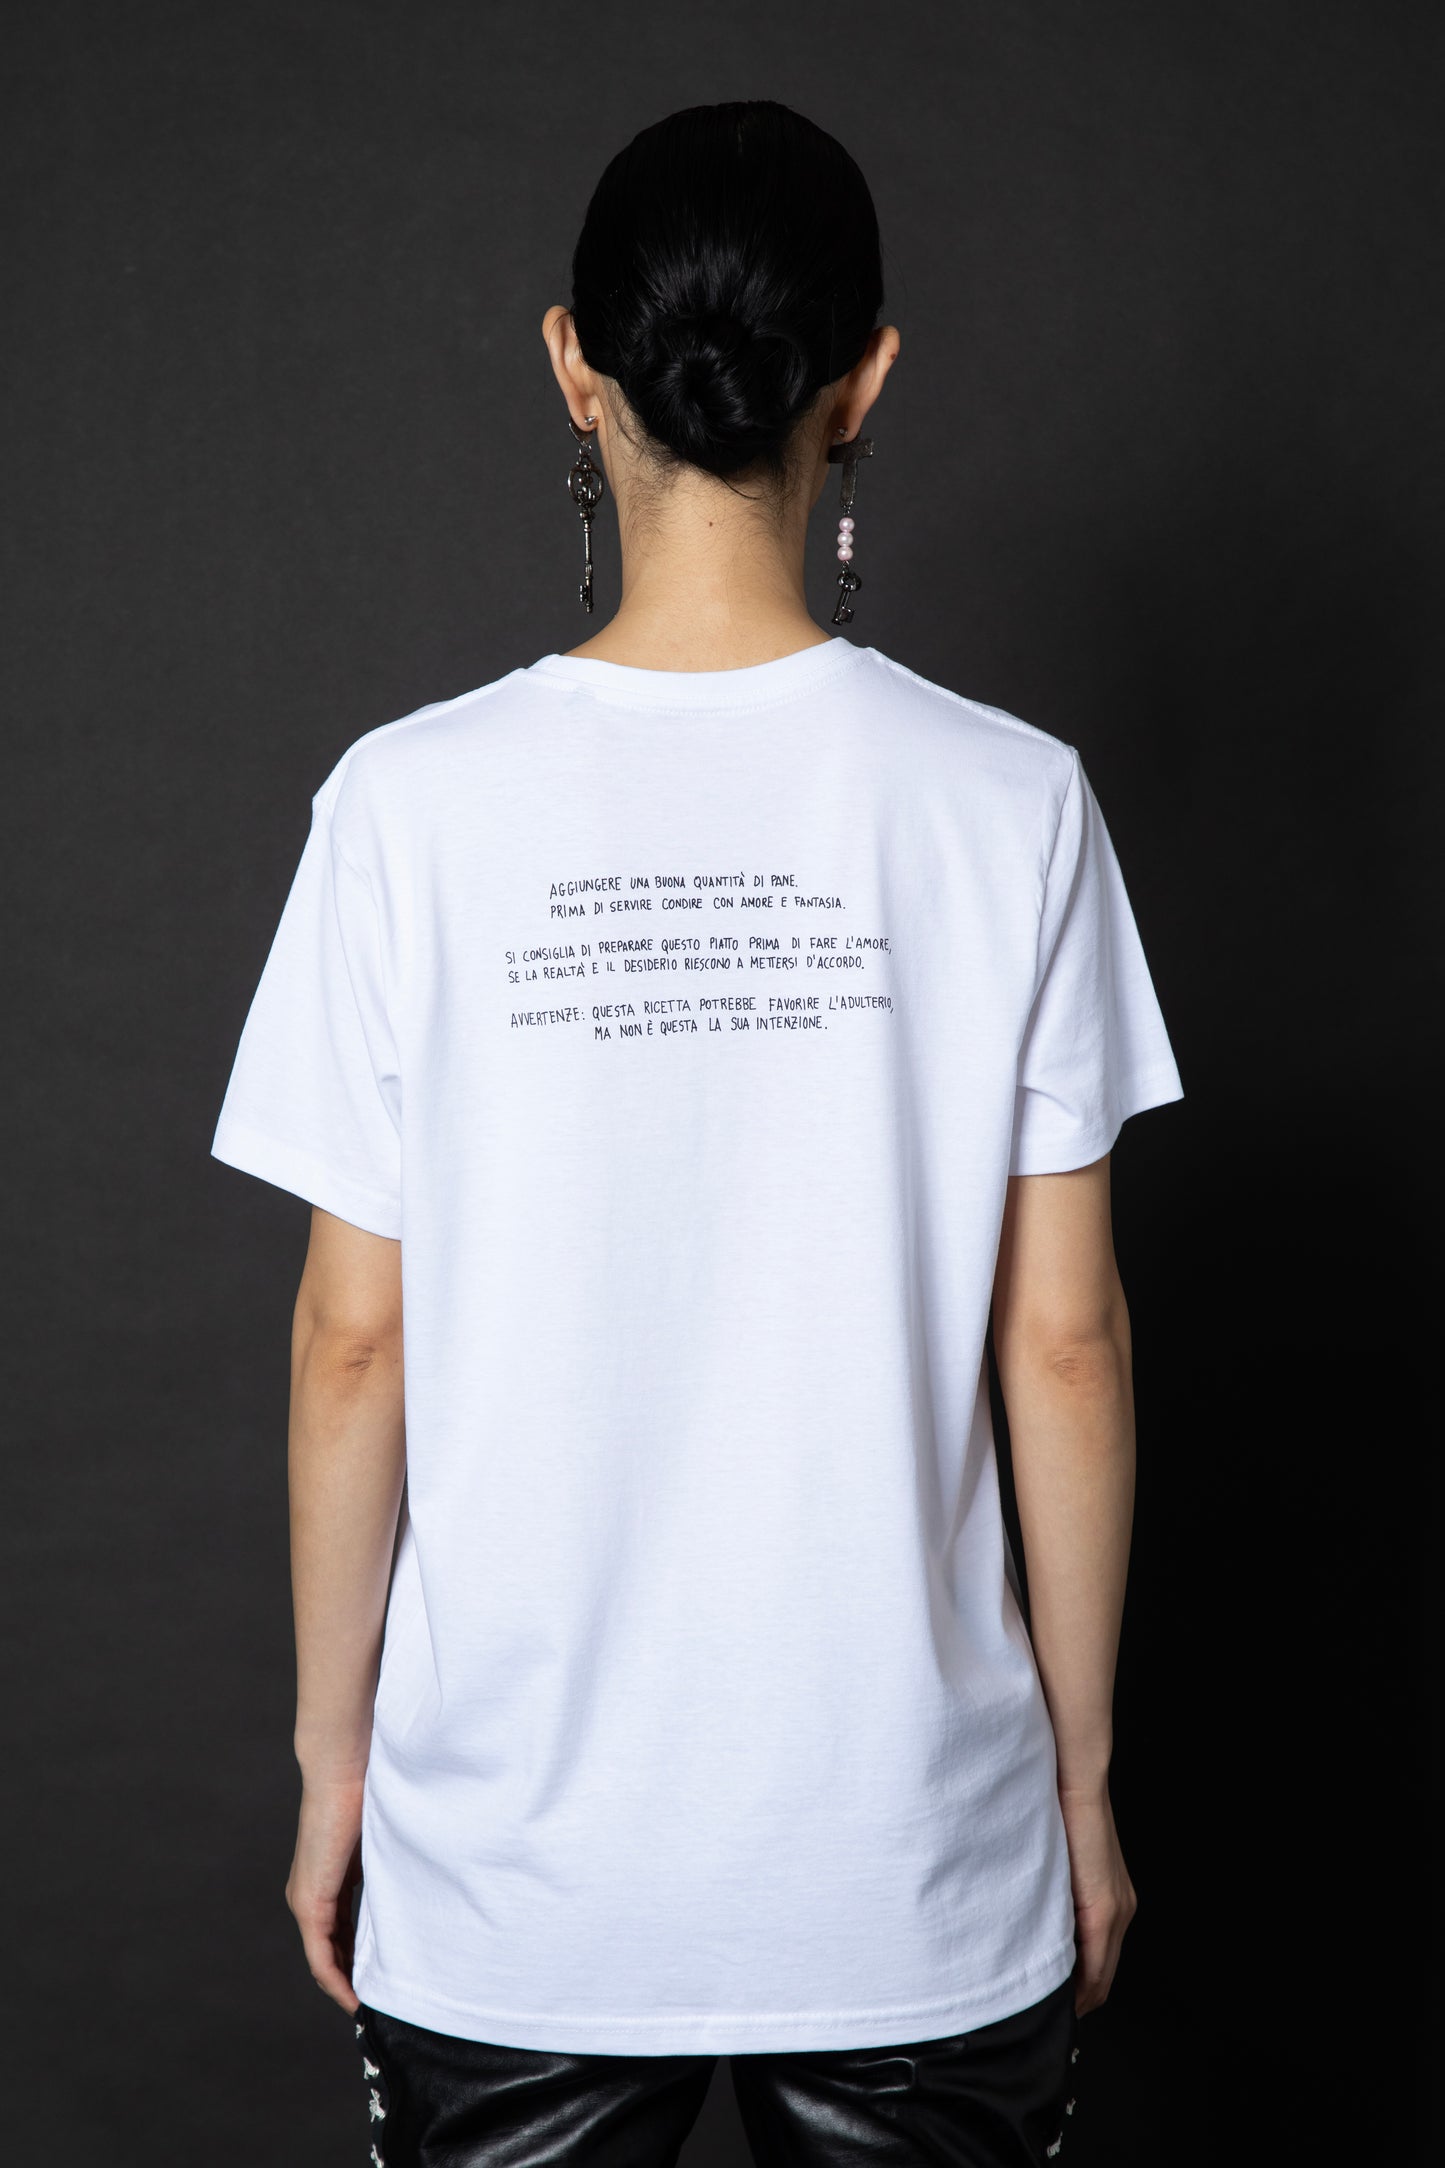 T-shirt "Ostriche alla malafemmina"